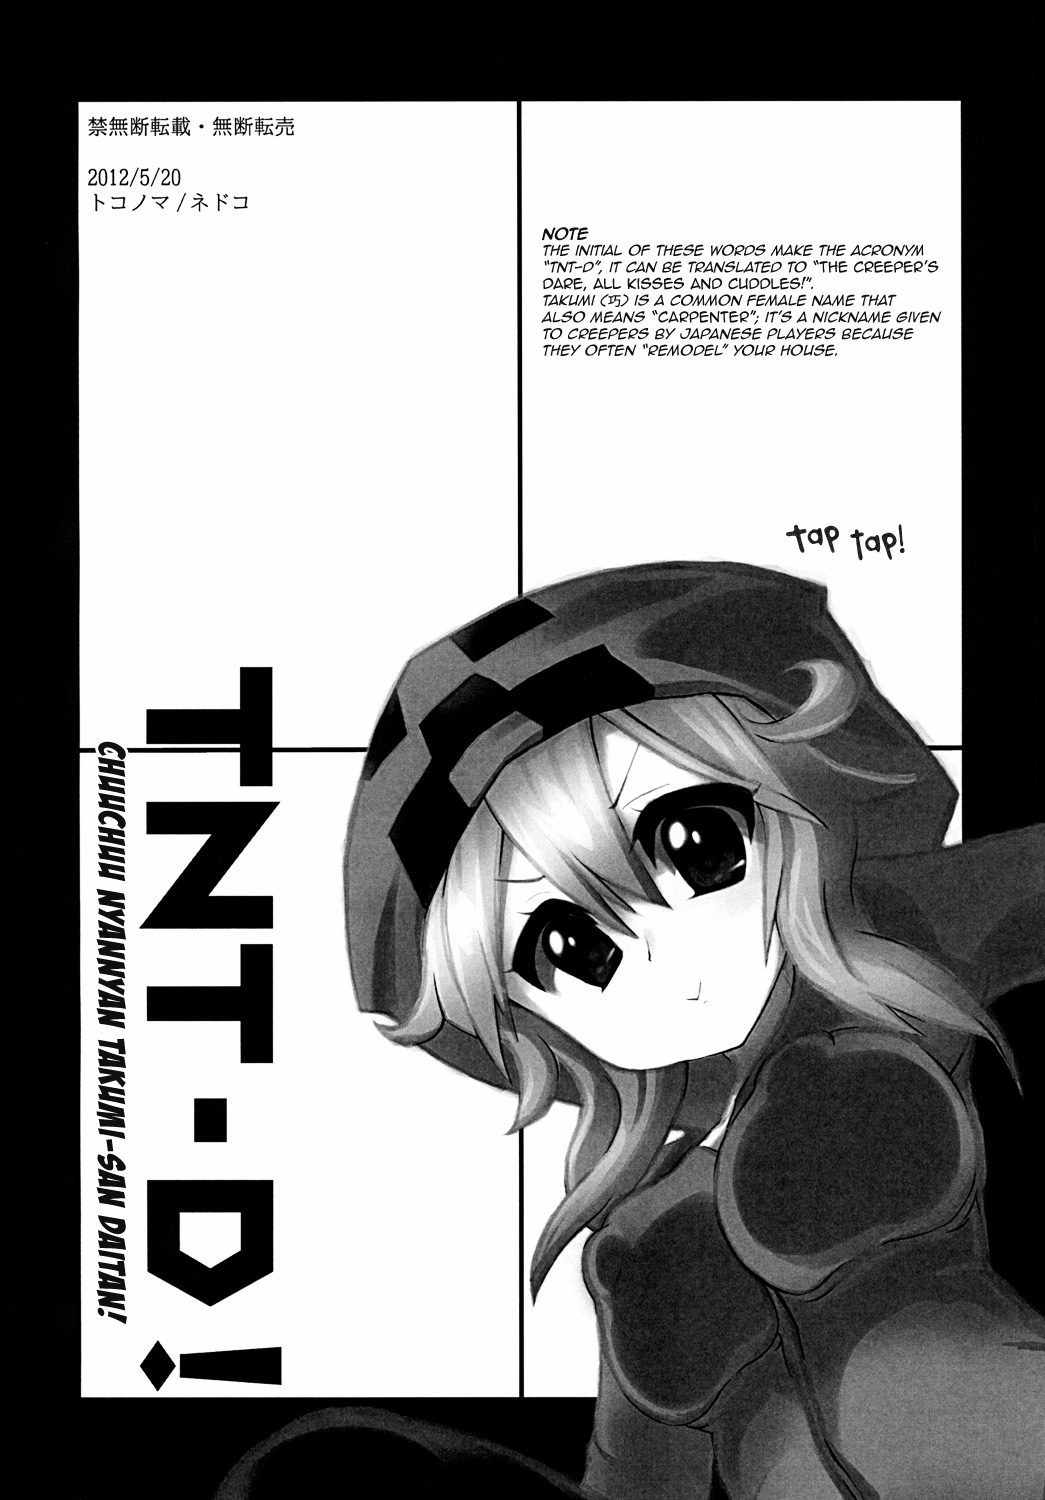 [トコノマ] TNT-D! (Minecraft) [英訳] =Ero Manga Girls + maipantsu=